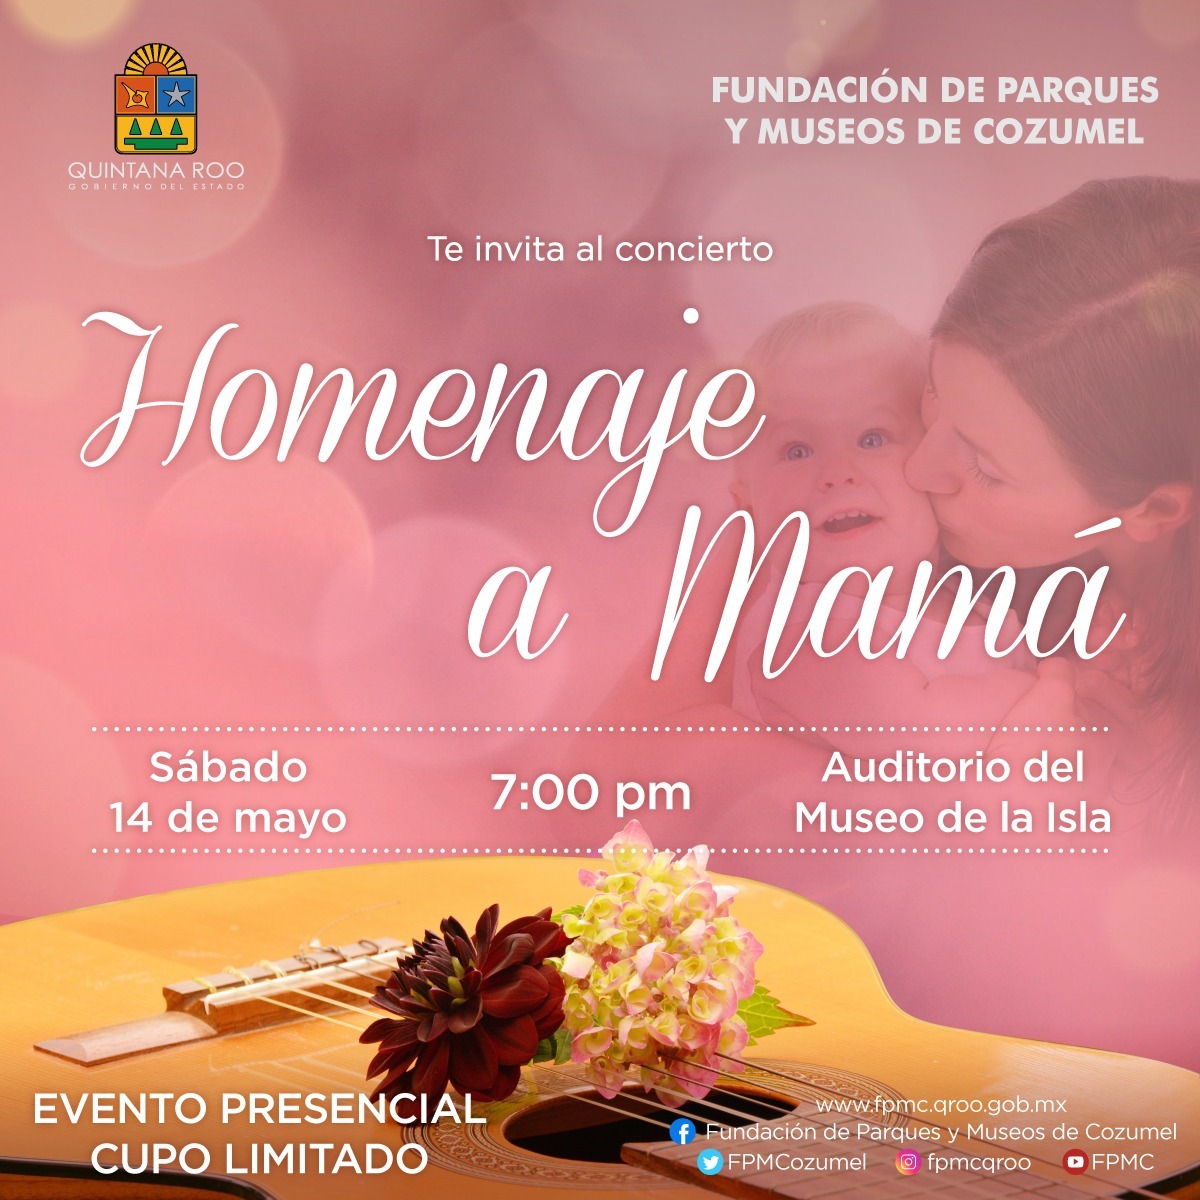 la Fundación de Parques y Museos de Cozumel (FPMC) invita al concierto en vivo “Homenaje a Mamá”